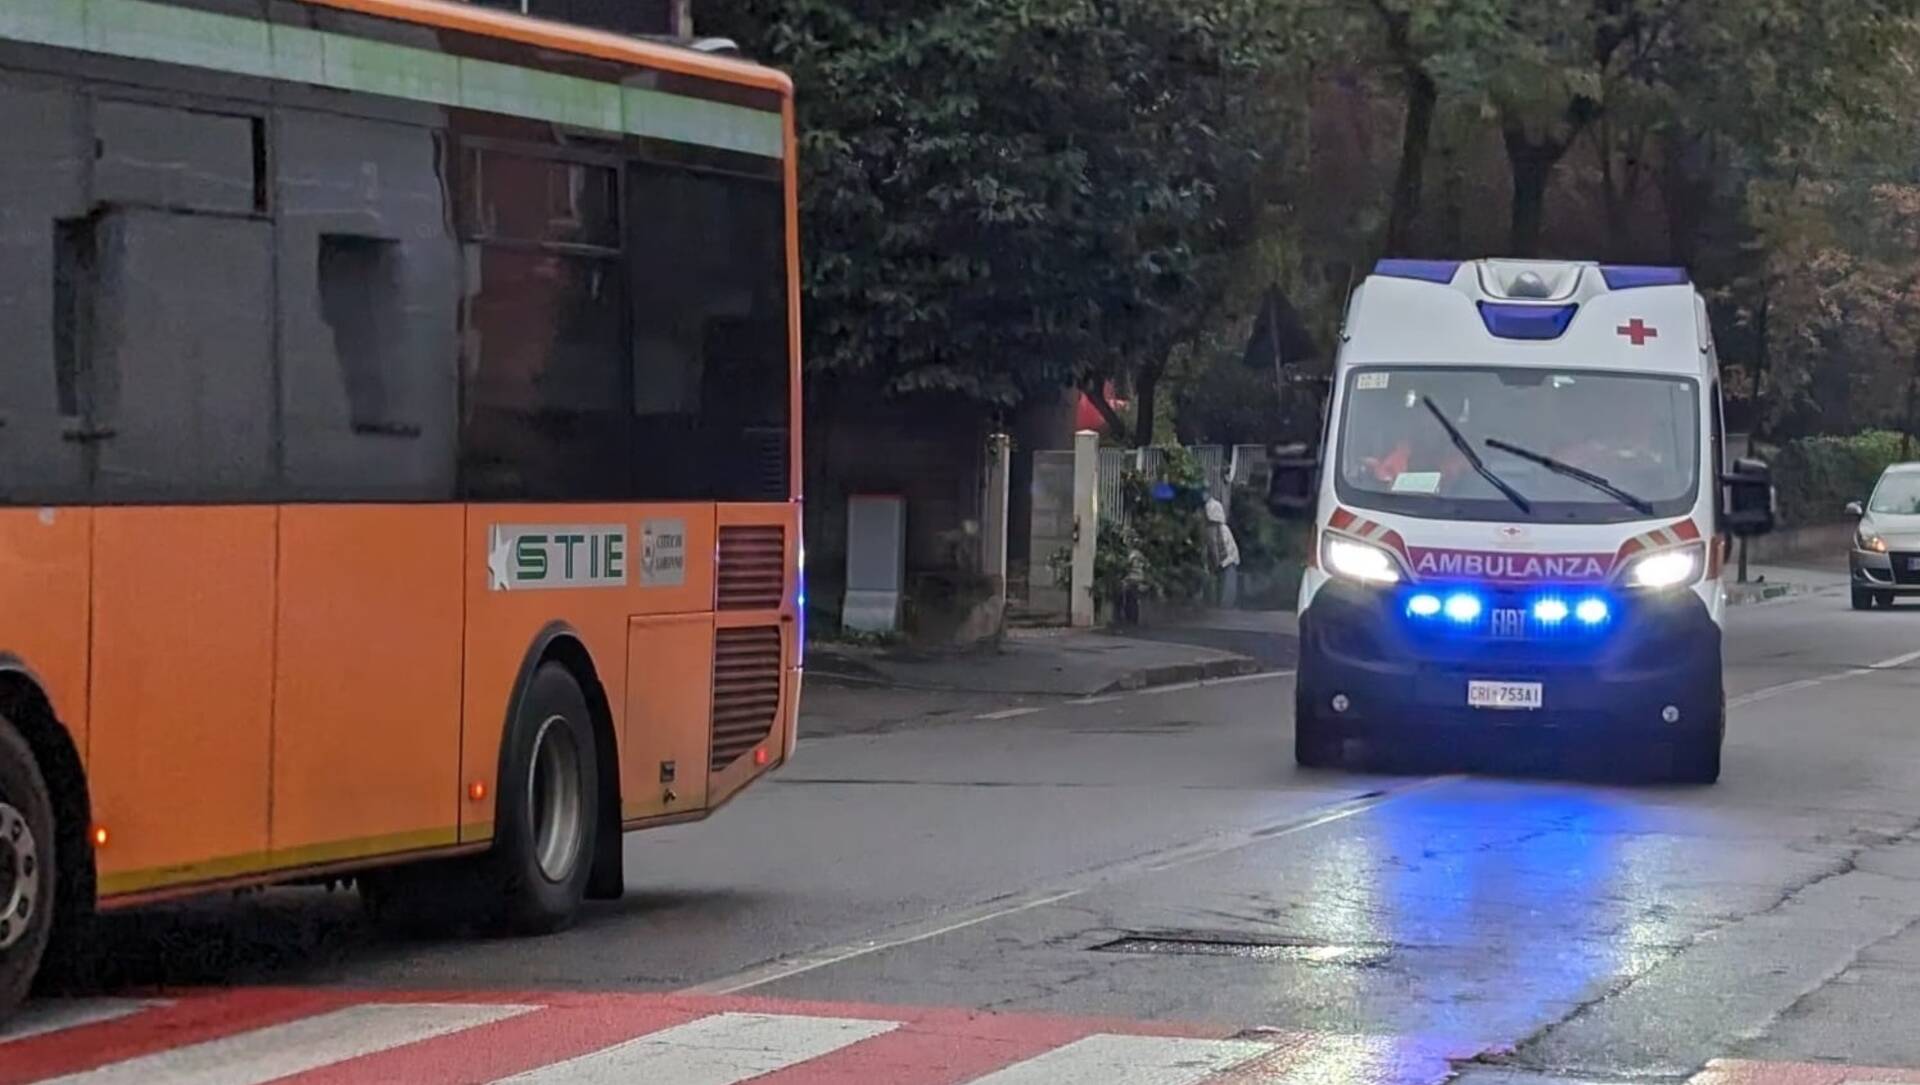 Emergenza sicurezza stradale a Saronno: 4 incidenti con feriti in un giorno